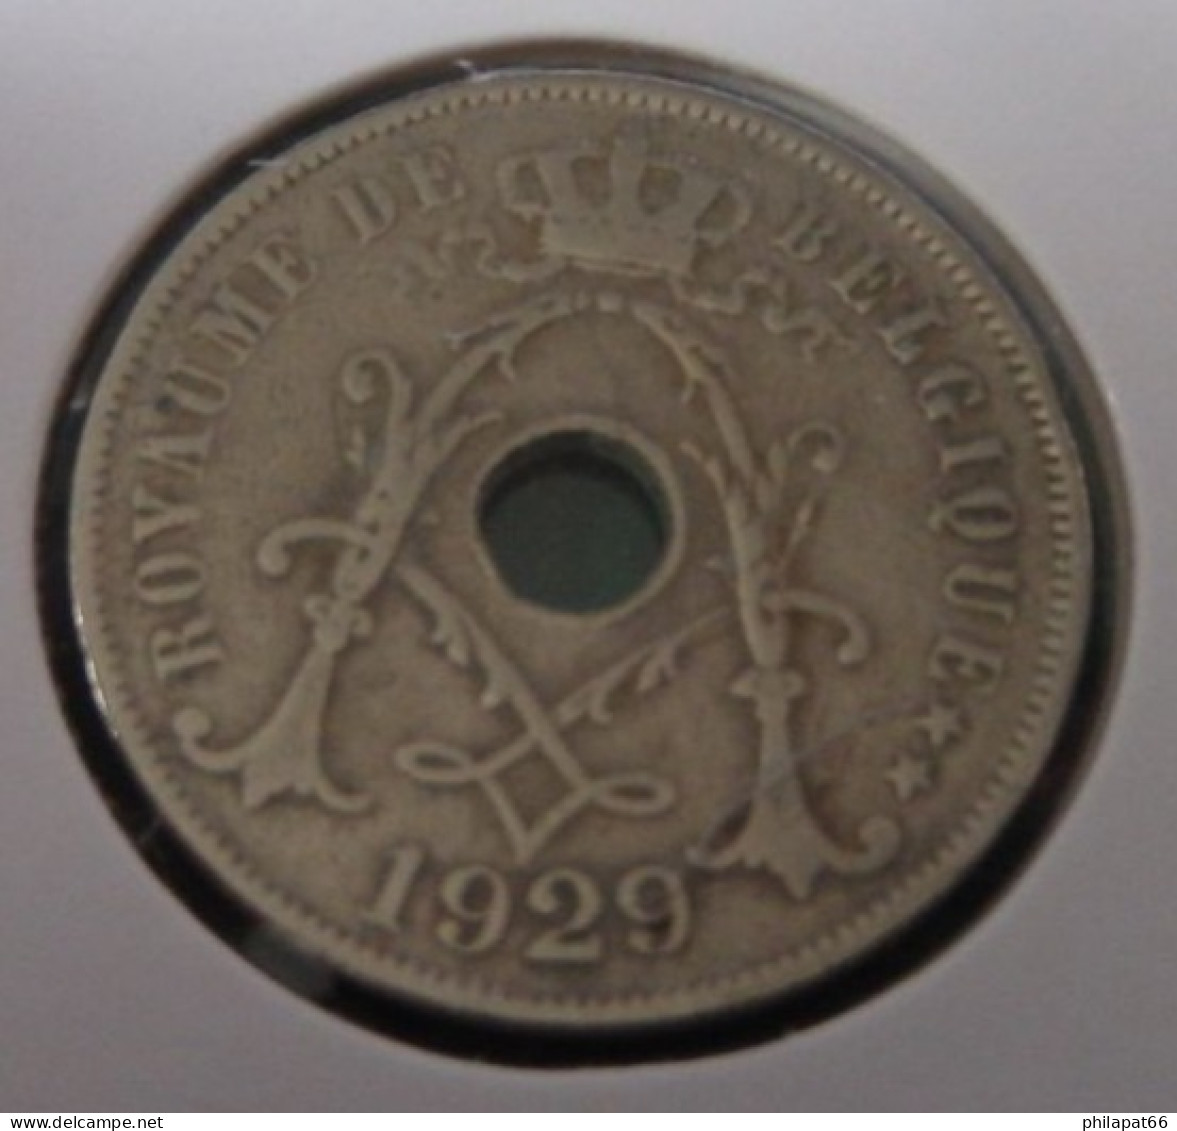 Albert I 25 Cent Monogram 1929FR - 25 Centimes